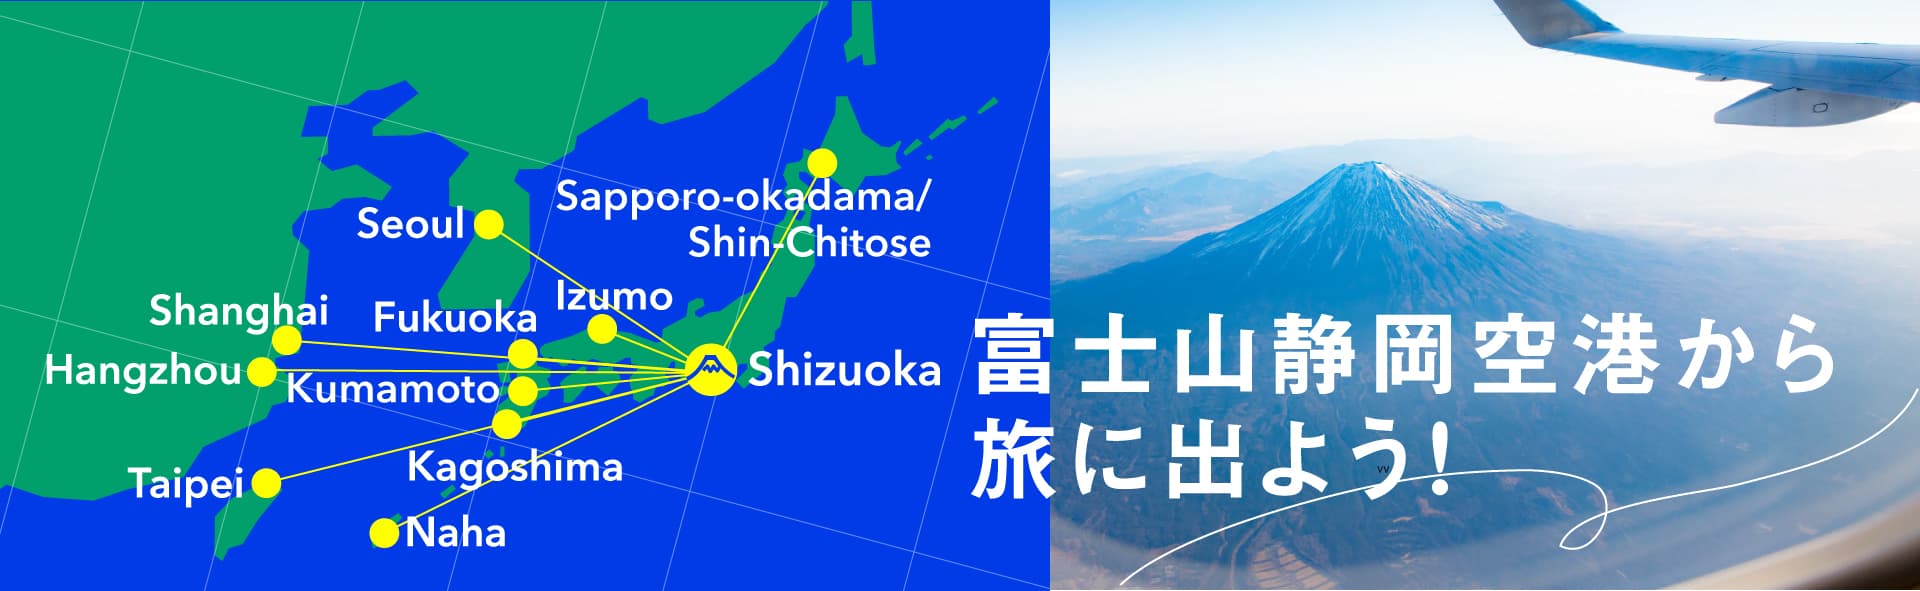 ふじそらトラベル 富士山静岡空港の公式空旅情報サイト